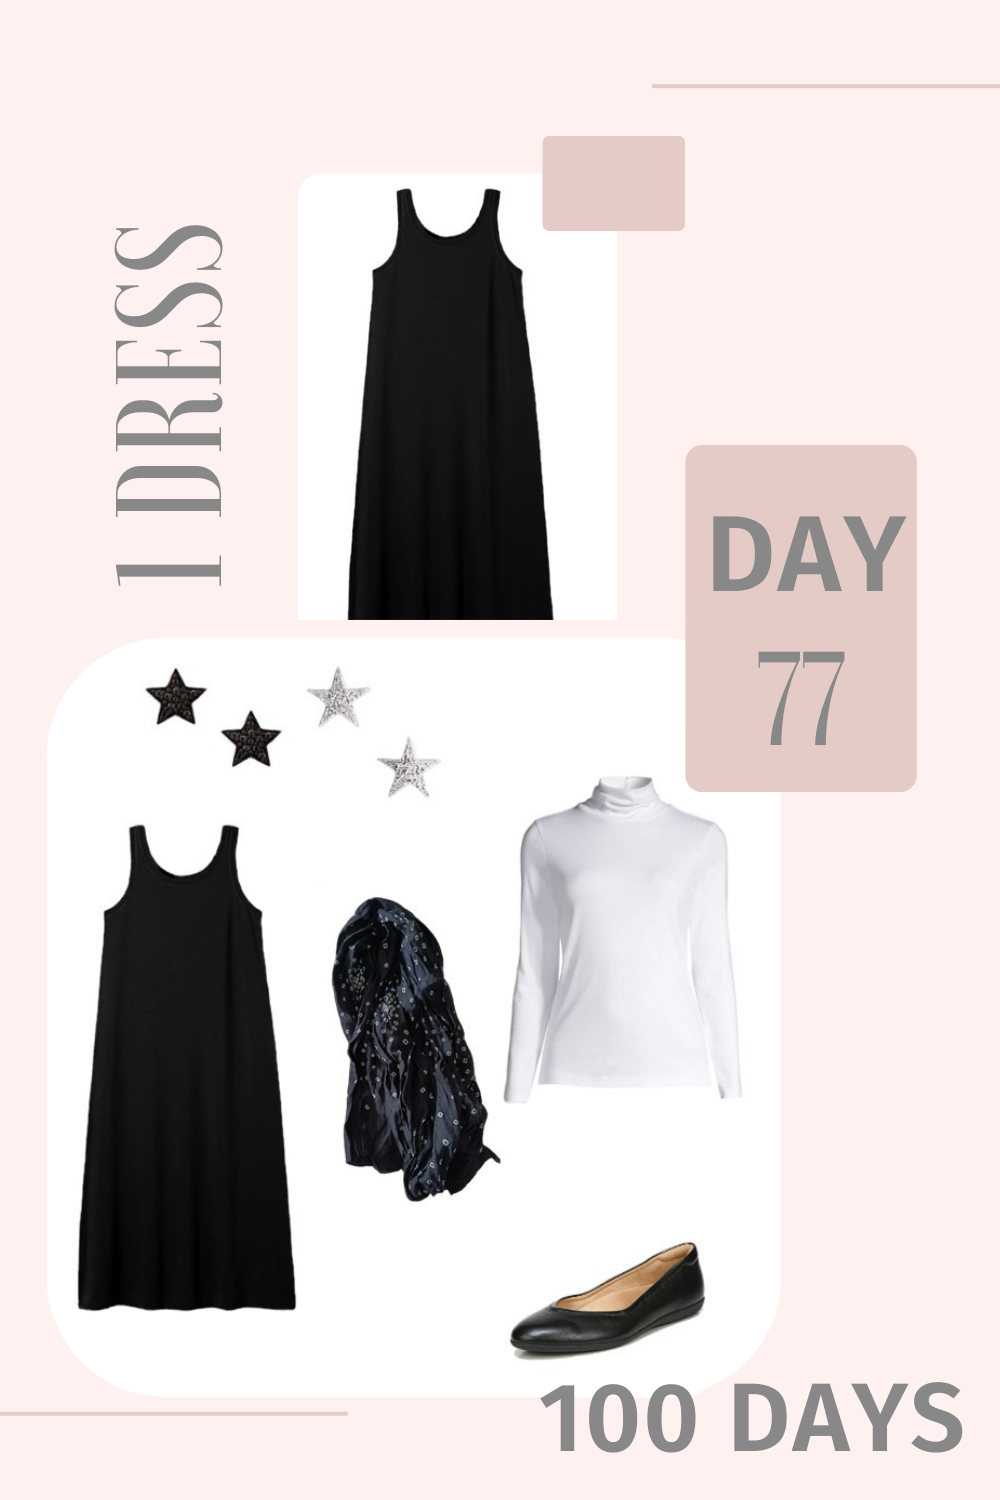 1 Dress 100 Days - Day 77